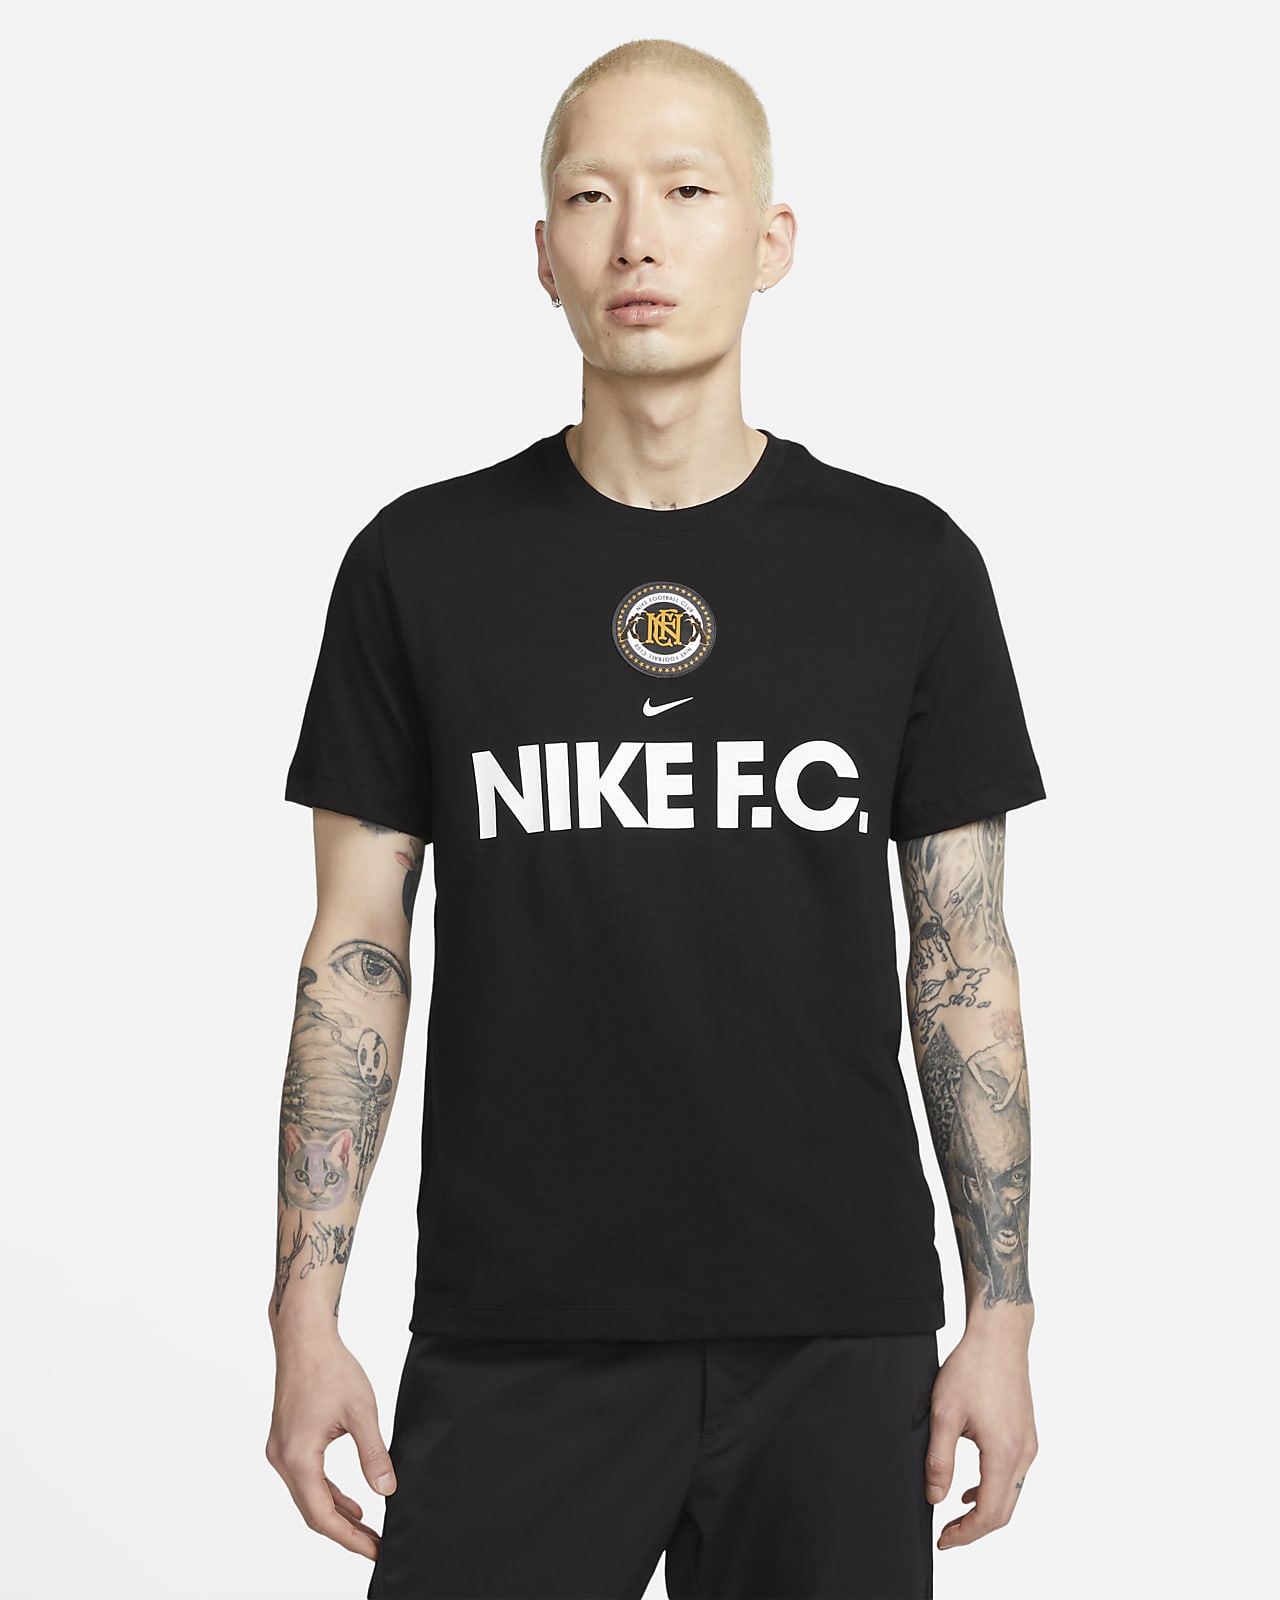 Pendiente caja de cartón Dinkarville Nike Men's Football T-Shirt. Nike SG